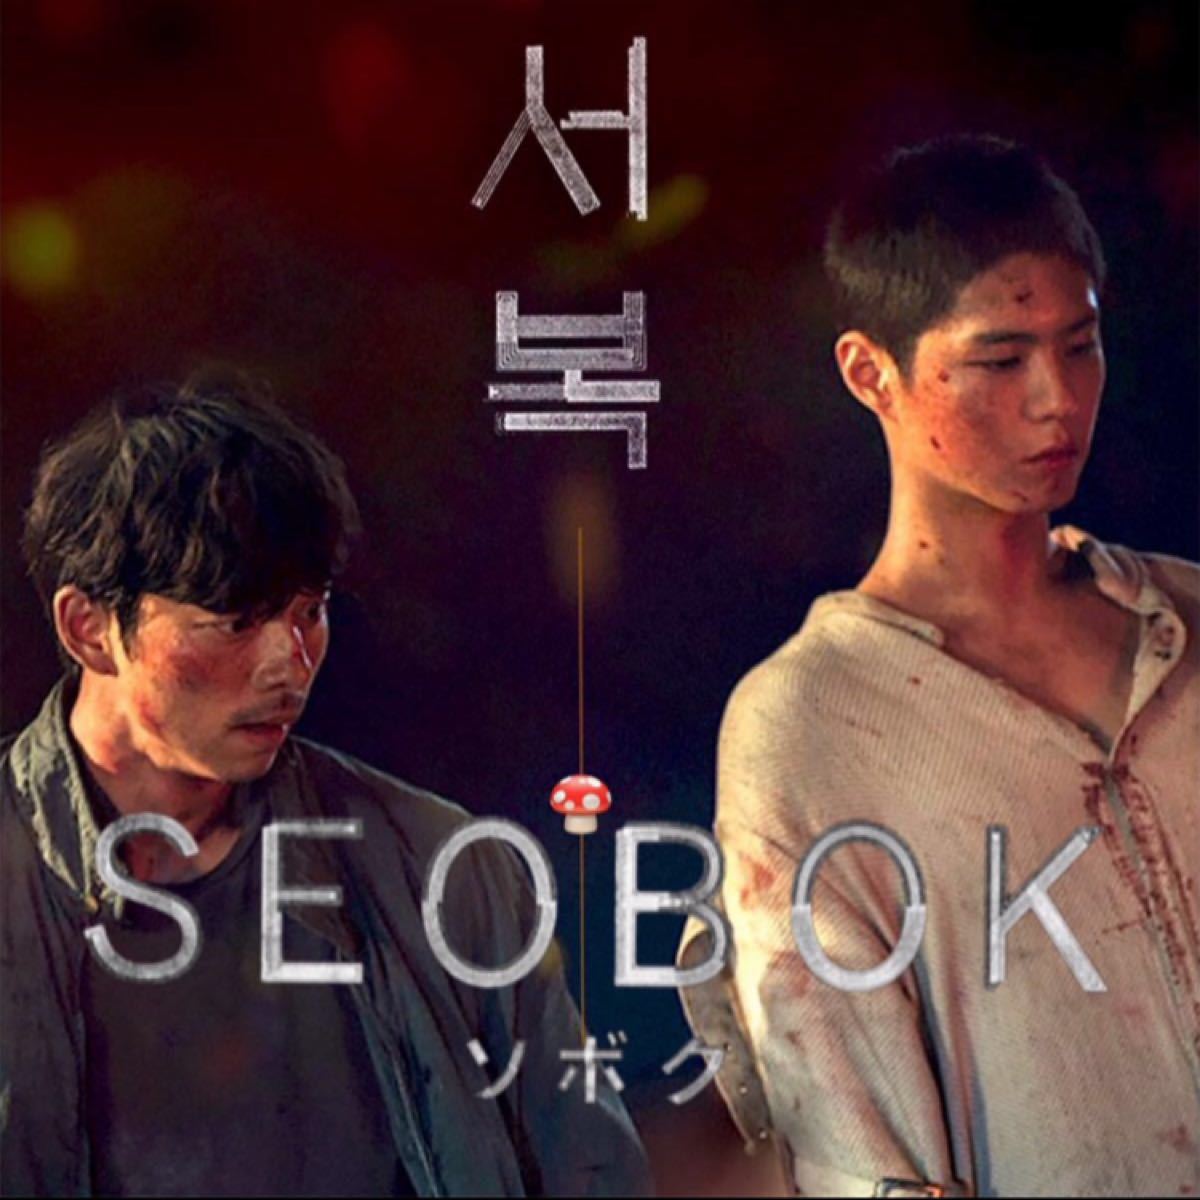 韓国映画　ソボク